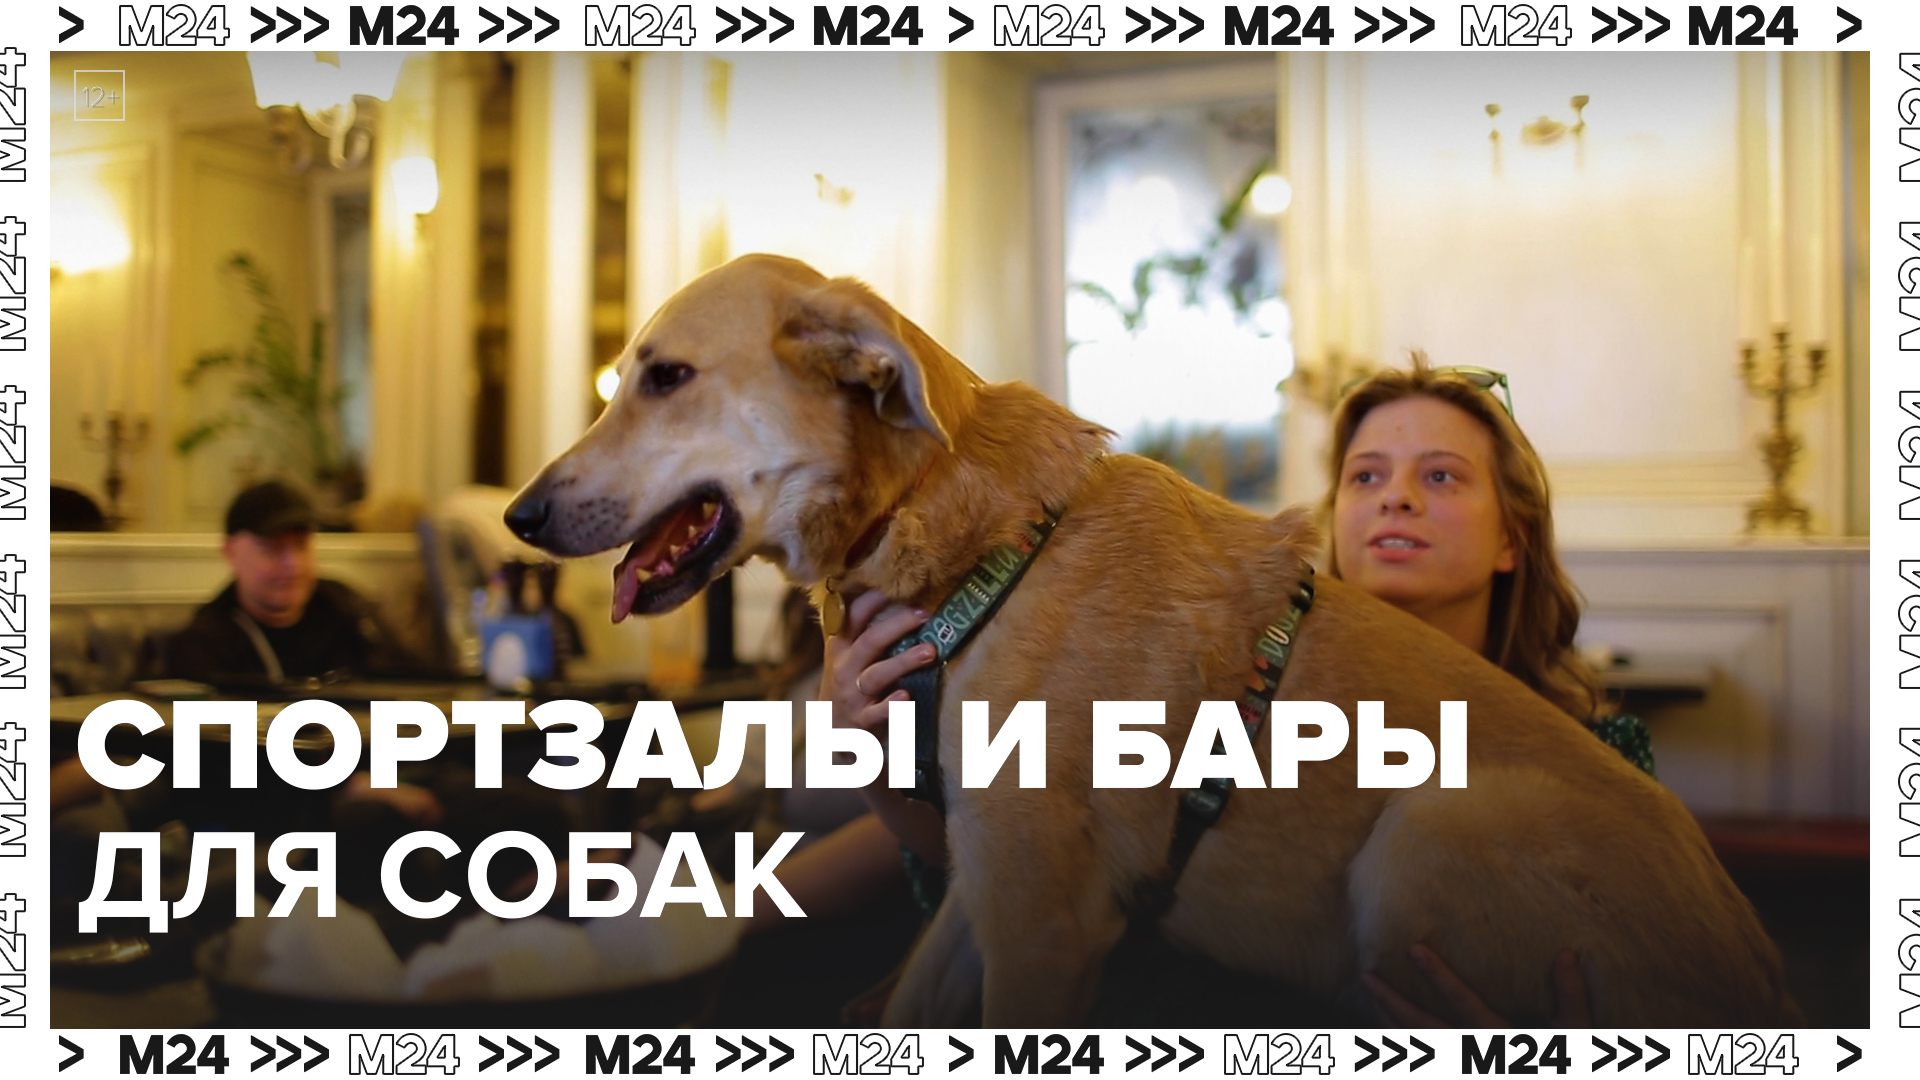 Спортзалы и бары для собак — Москва24|Контент